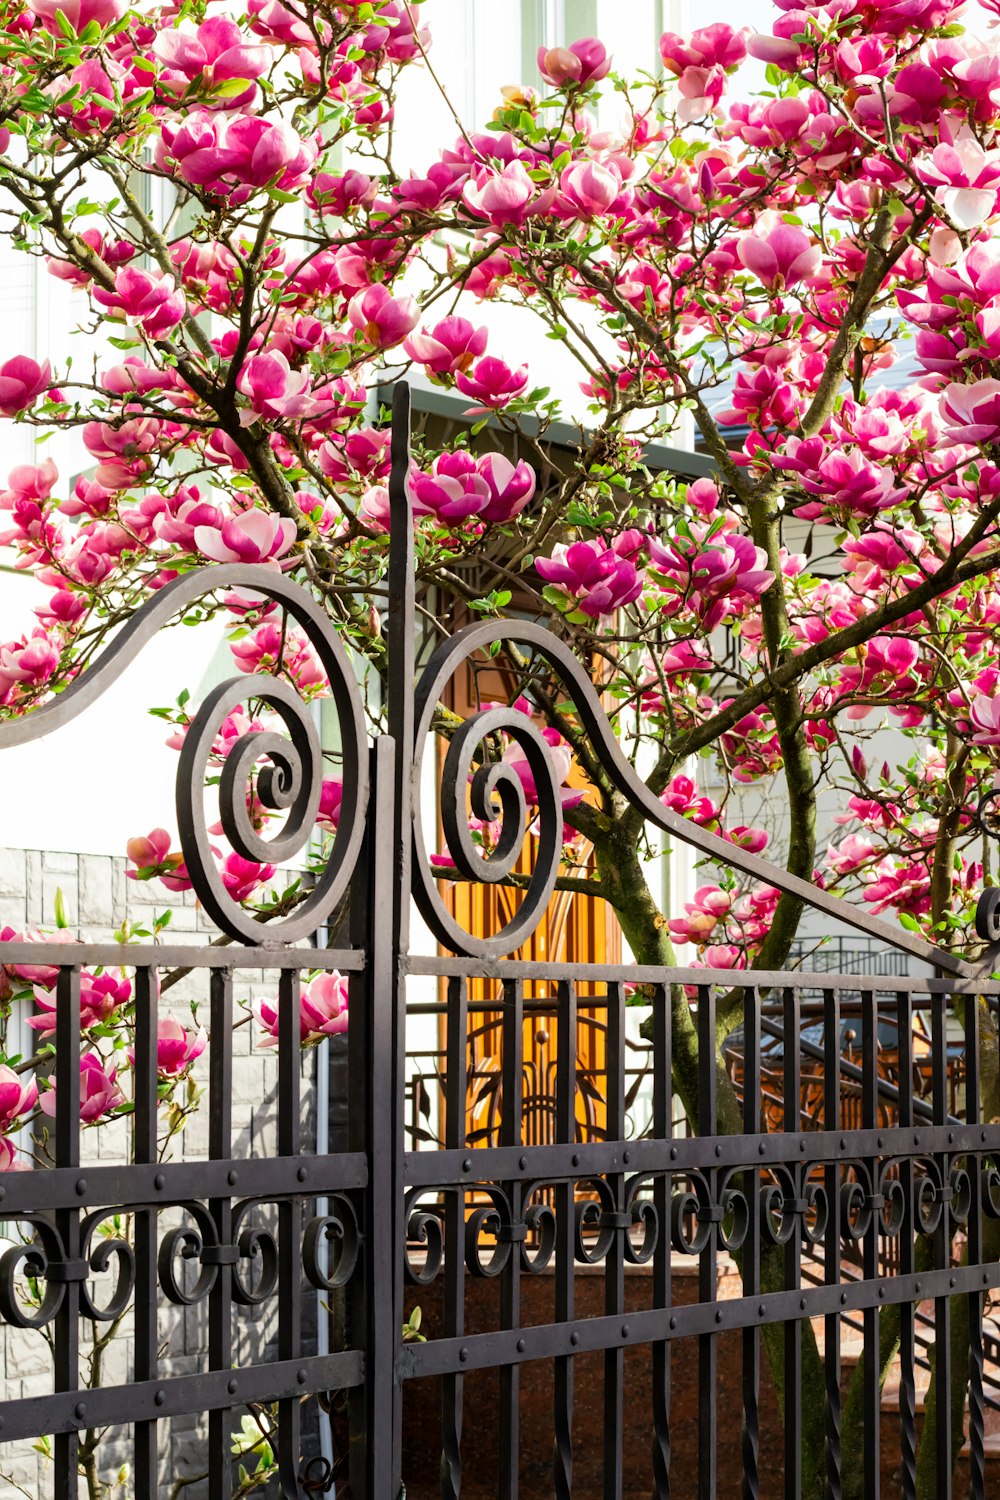 flores cor-de-rosa e brancas na cerca preta do metal